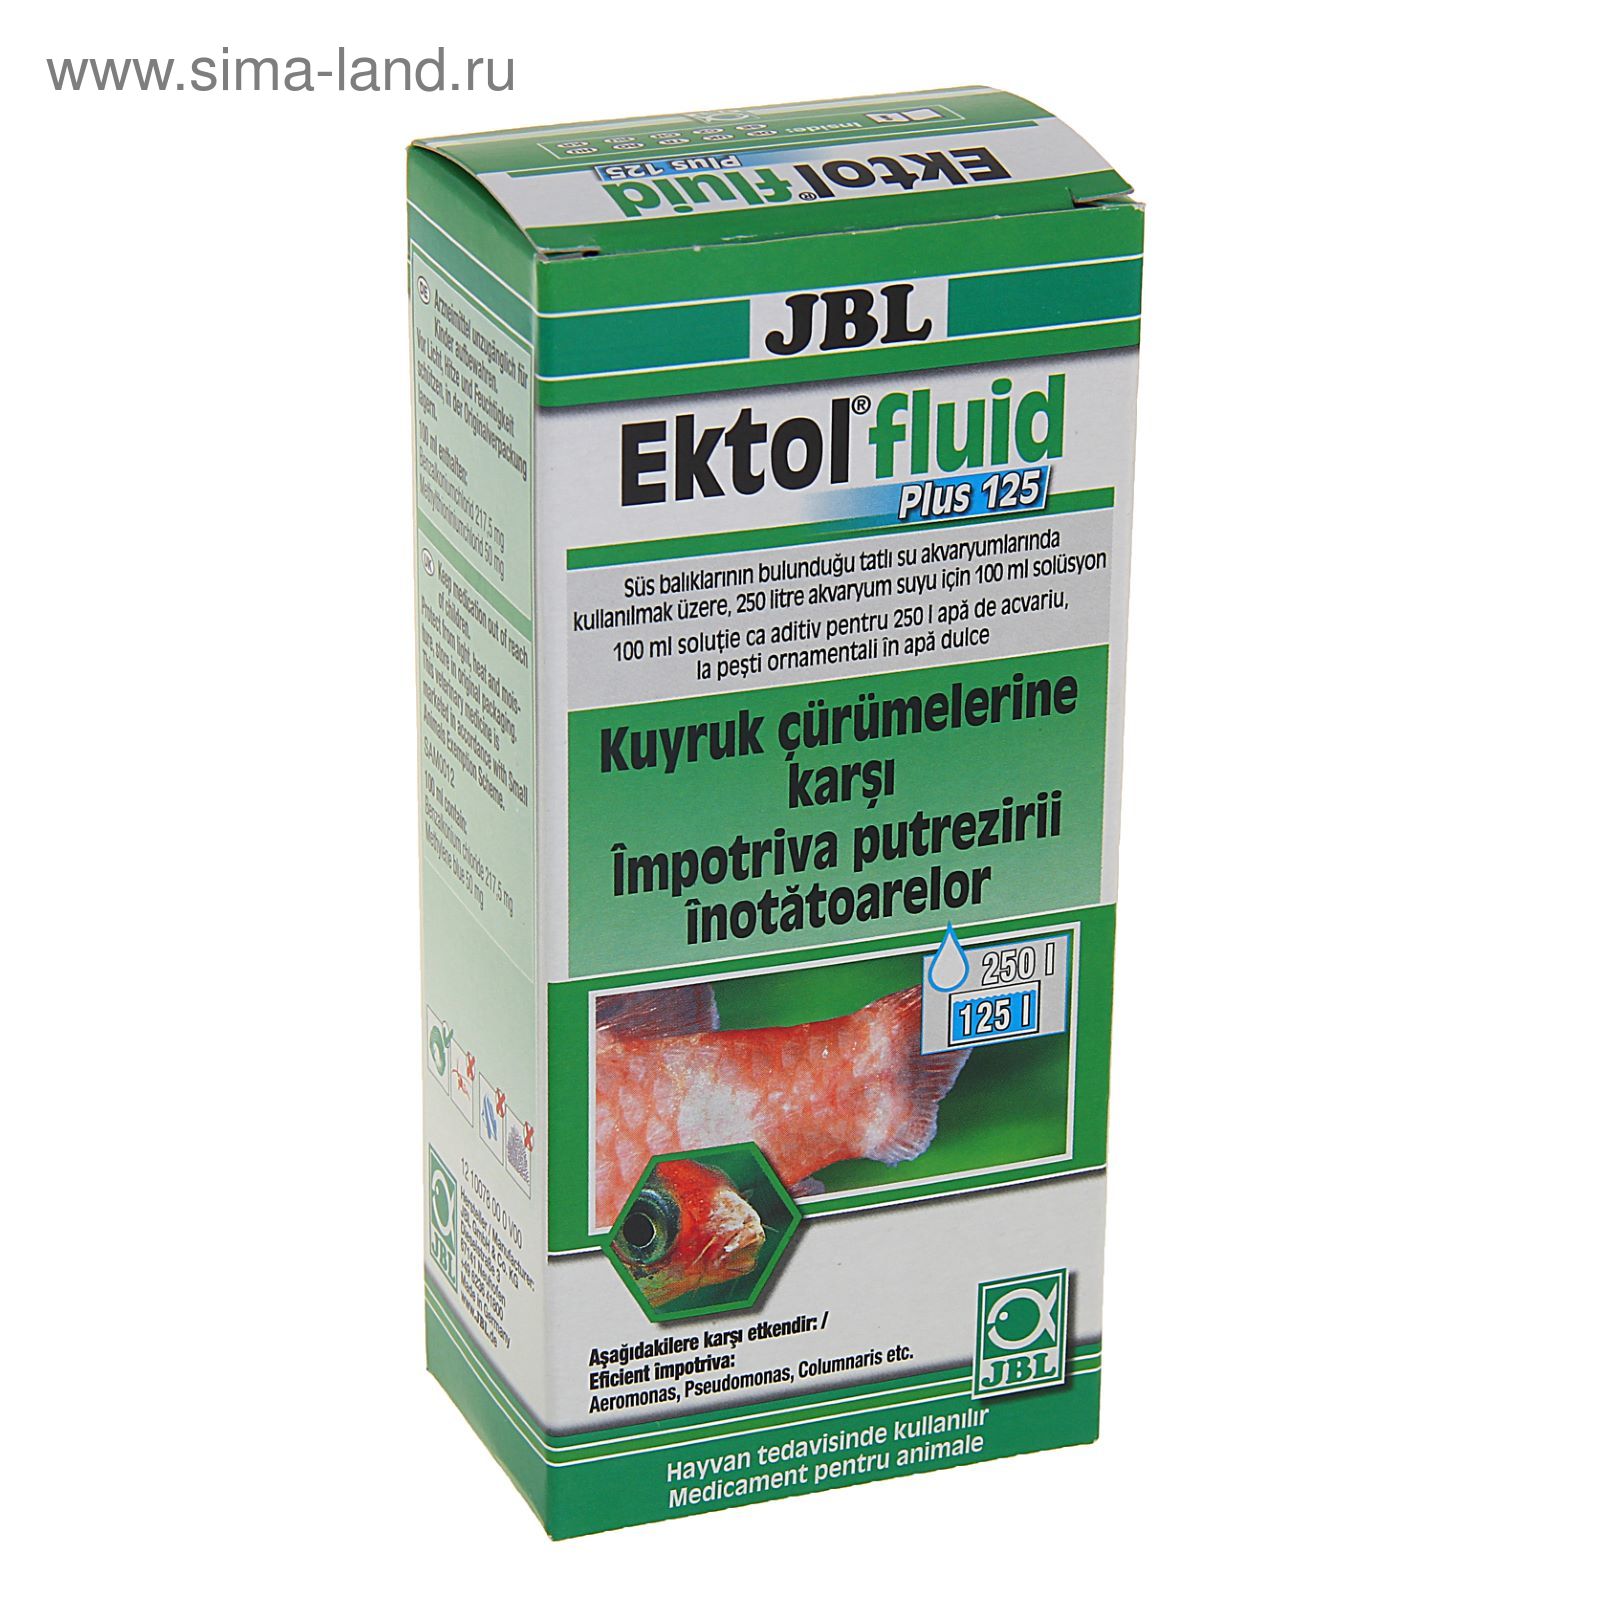 Oxidado Ya pasión Препарат JBL Ektol fluid Plus 125 против плавниковой гнили и других внешних  бактериальных заболеваний (1299612) - Купить по цене от 558.00 руб. |  Интернет магазин SIMA-LAND.RU